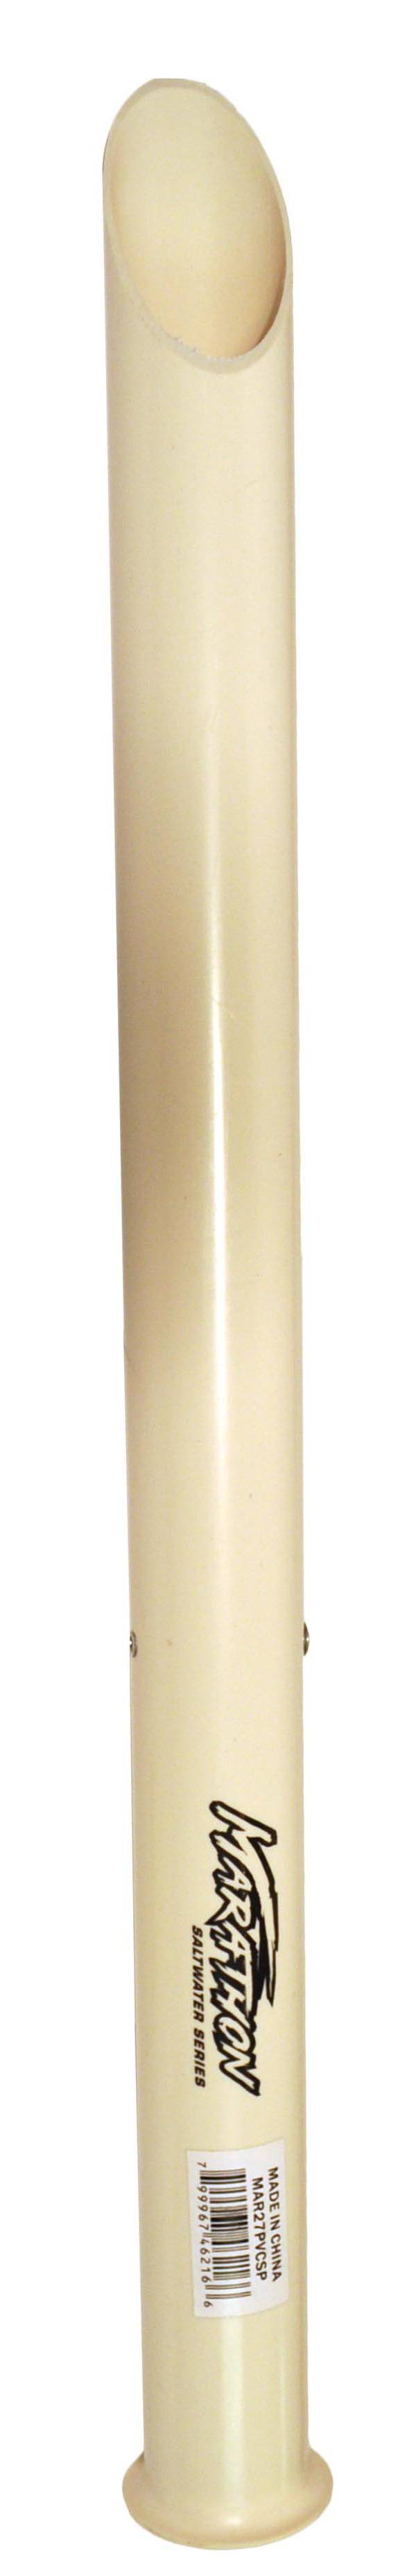 Marathon Sand Spike PVC Rod Holder – 27” product image